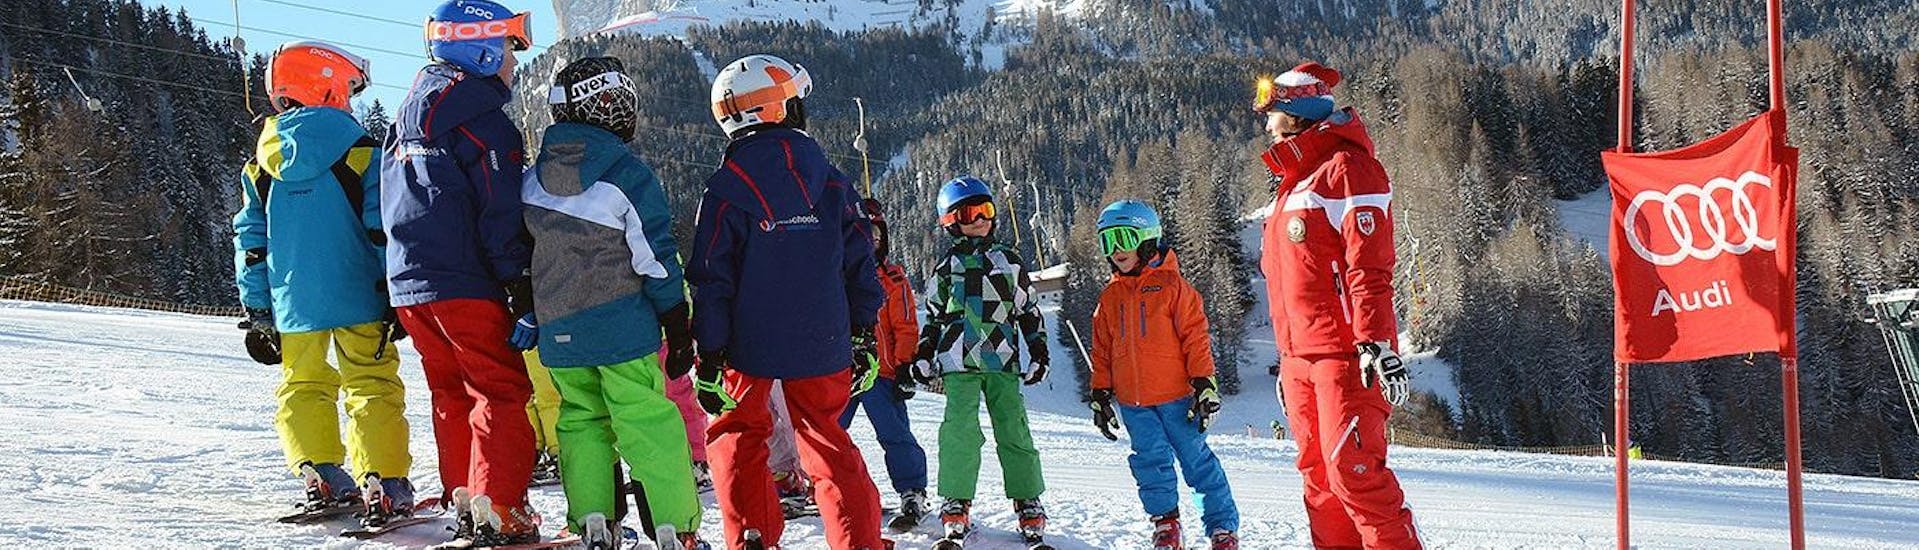 Skilessen voor kinderen vanaf 10 jaar - gevorderd.